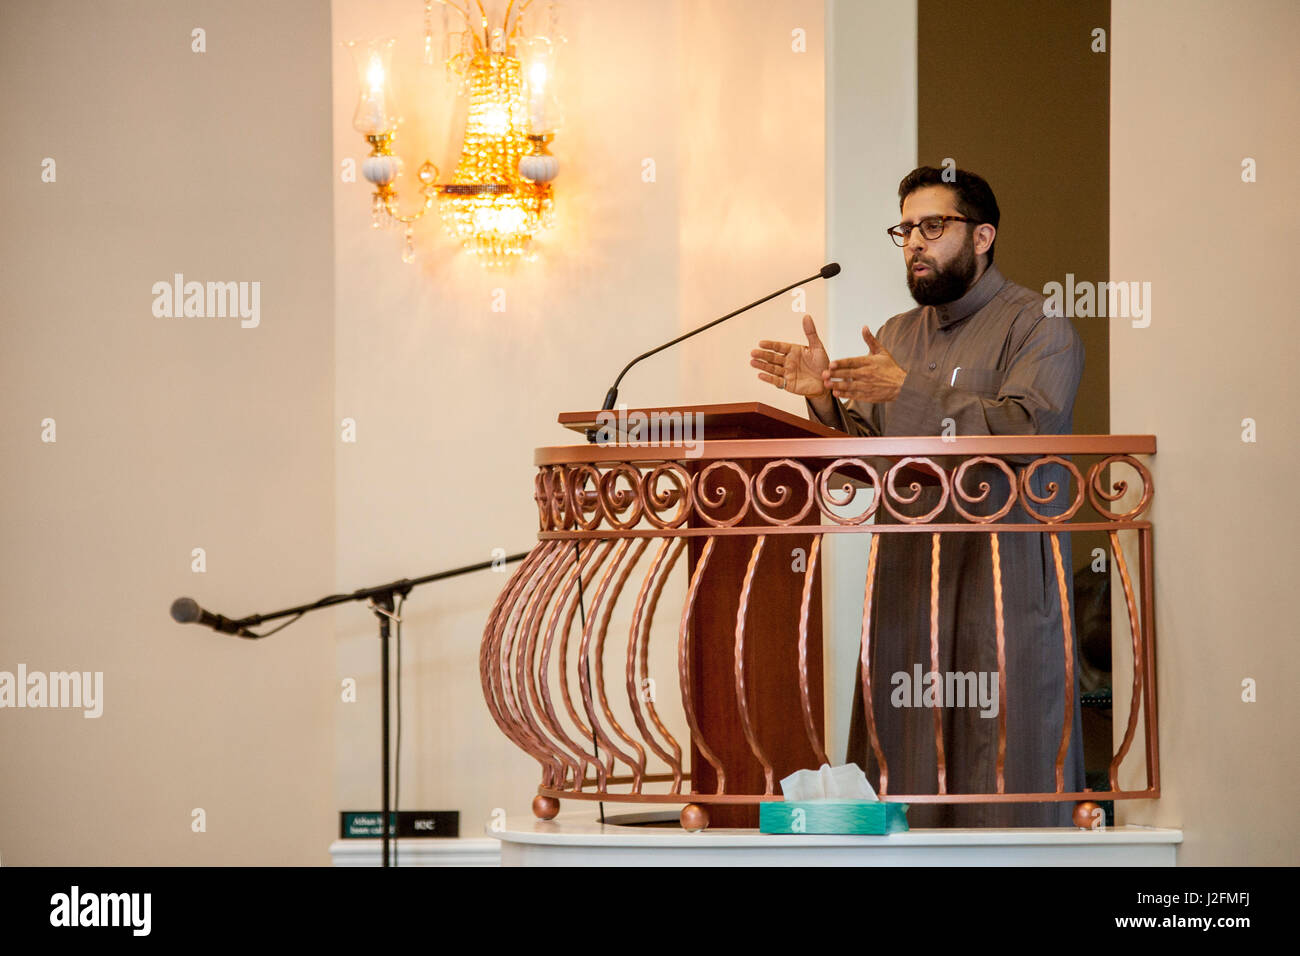 Un Iman realiza la oración de la tarde en una mezquita de Anaheim, CA, durante un servicio religioso musulmán. El sermón es también llamado el Jutbah. Foto de stock